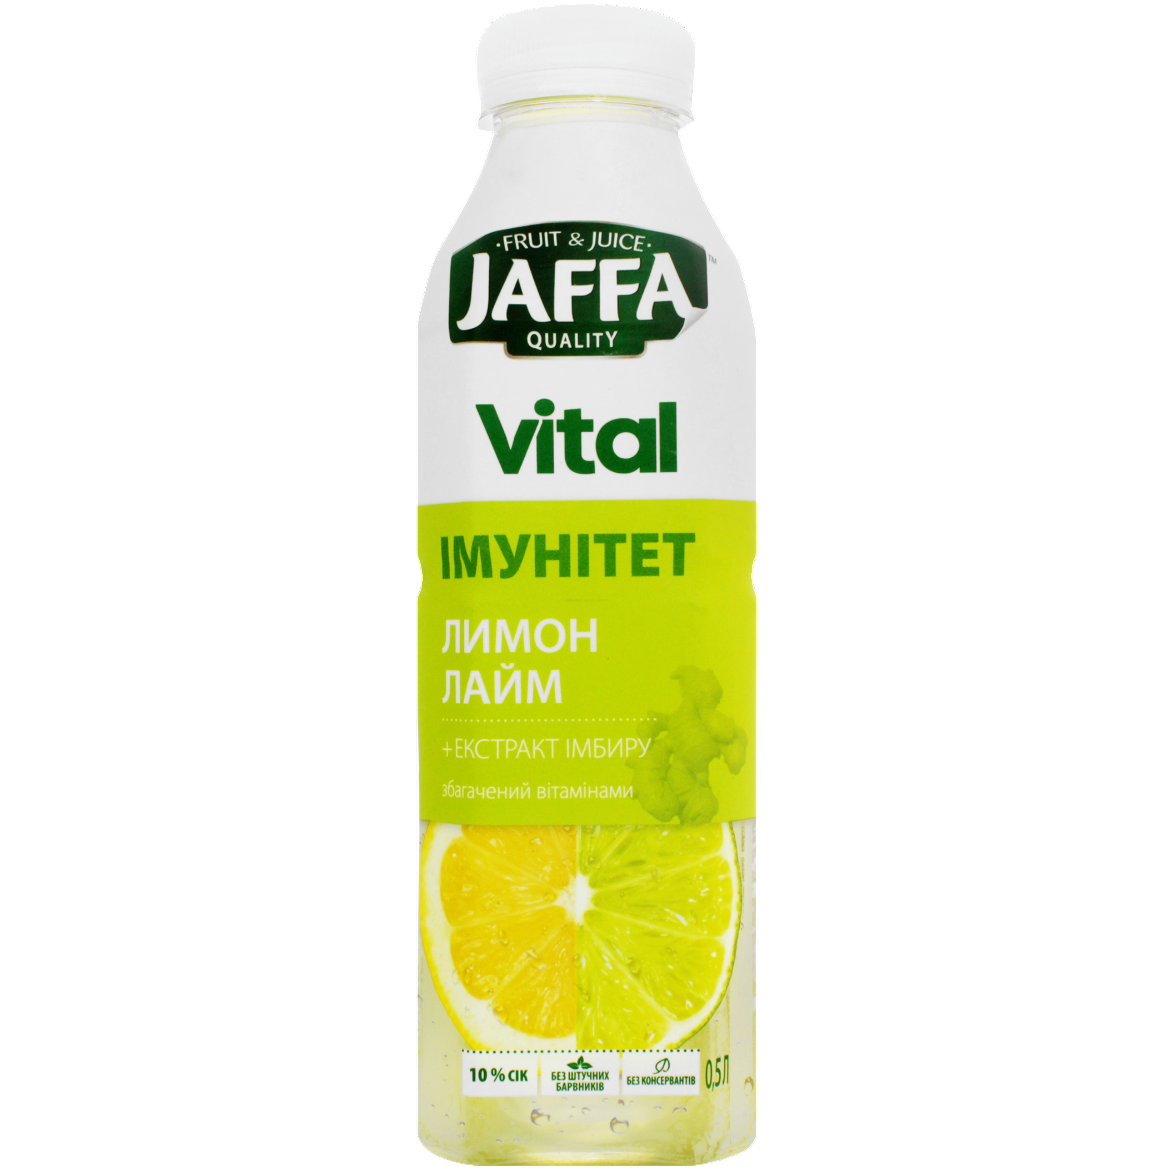 Напиток Jaffa Vital Immunity Лимон-Лайм с экстрактом имбиря 0.5 л - фото 1